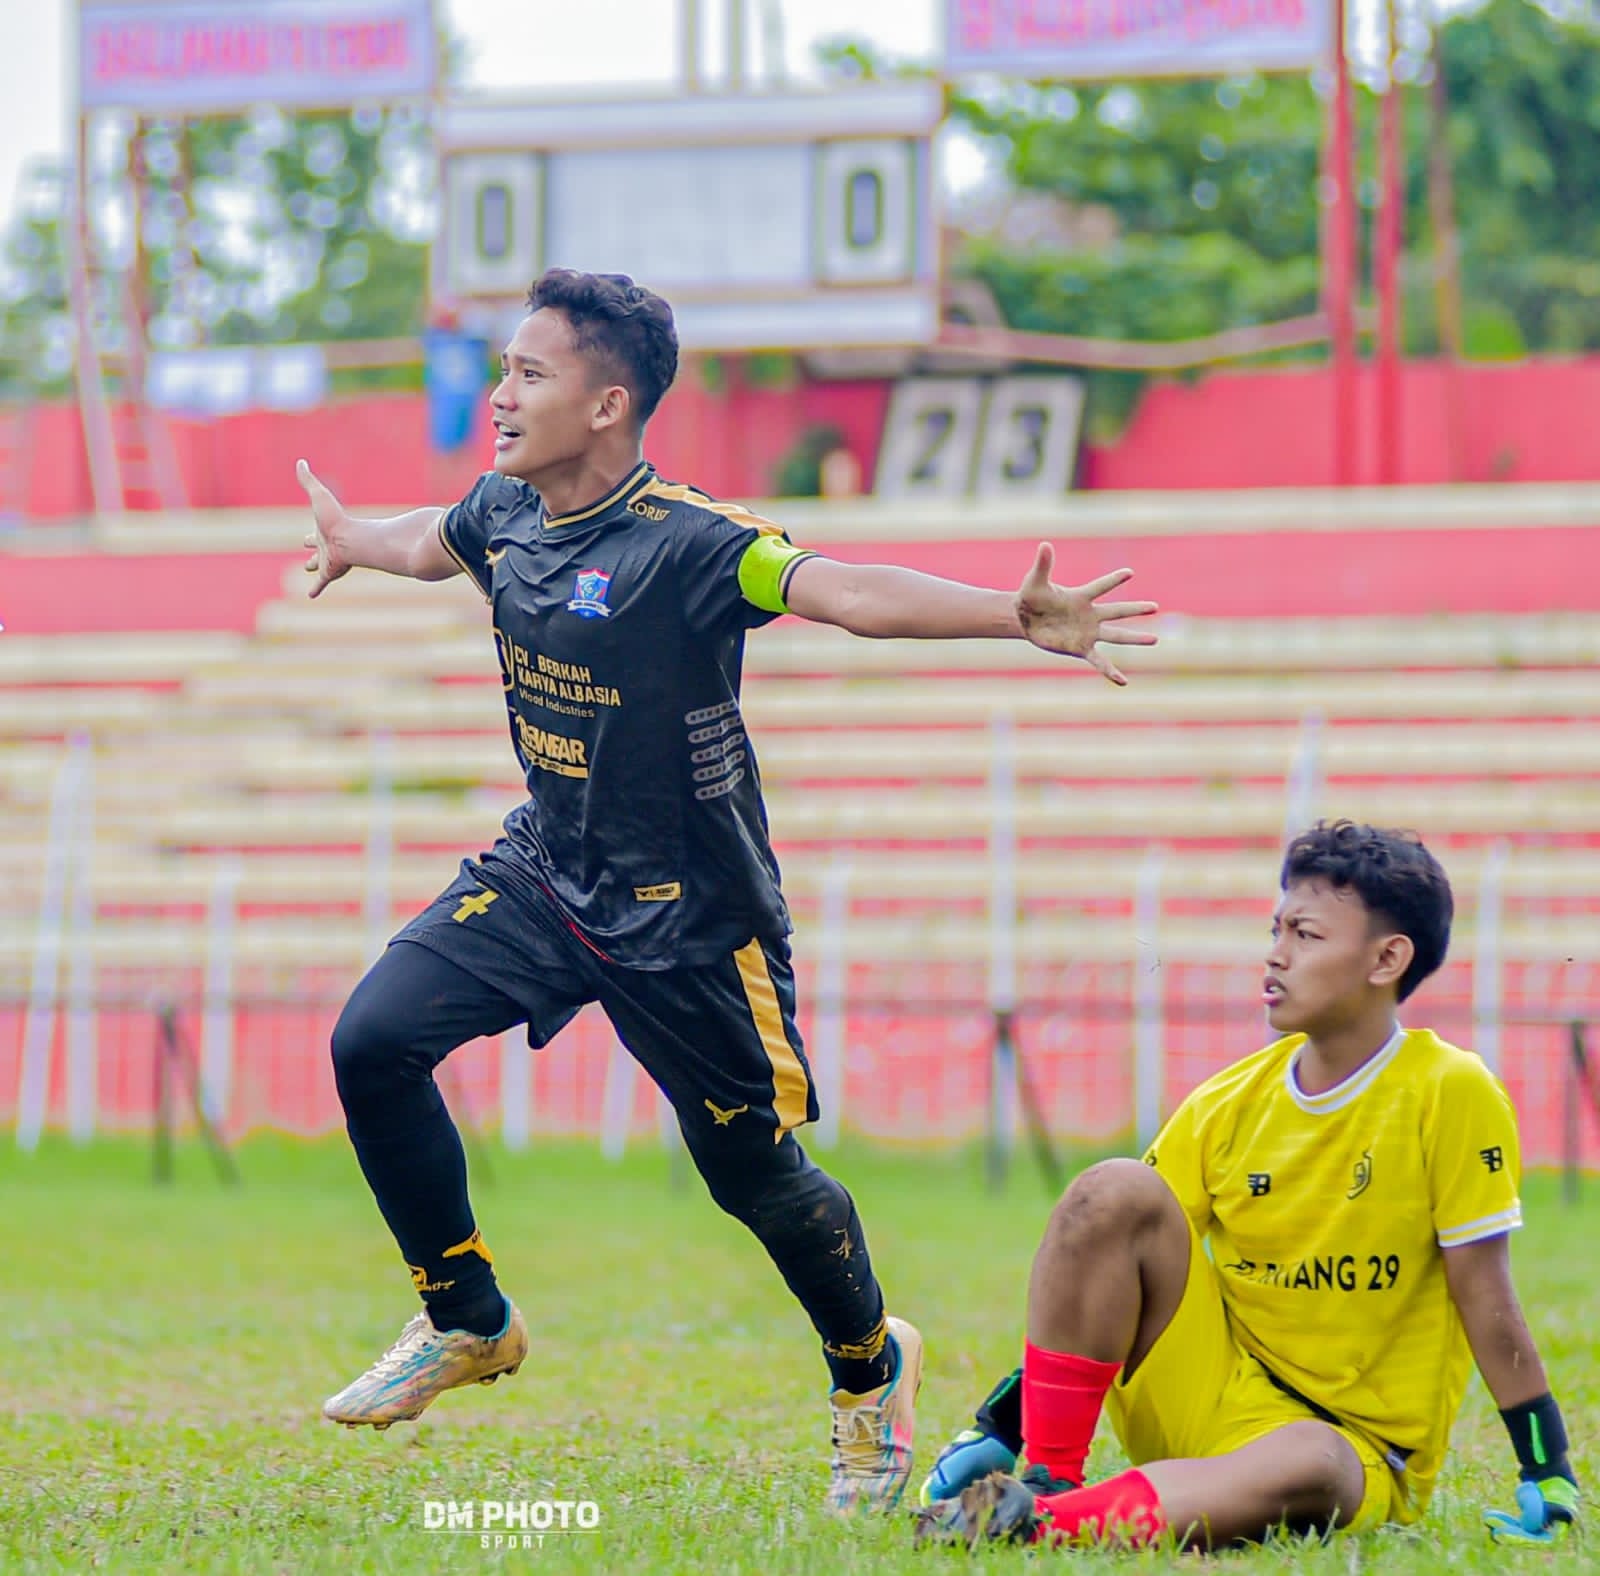 Mengenal Alfi Syahri Salah Satu Pemain Tim DAFA Pondok Pesantren Darul Amanah